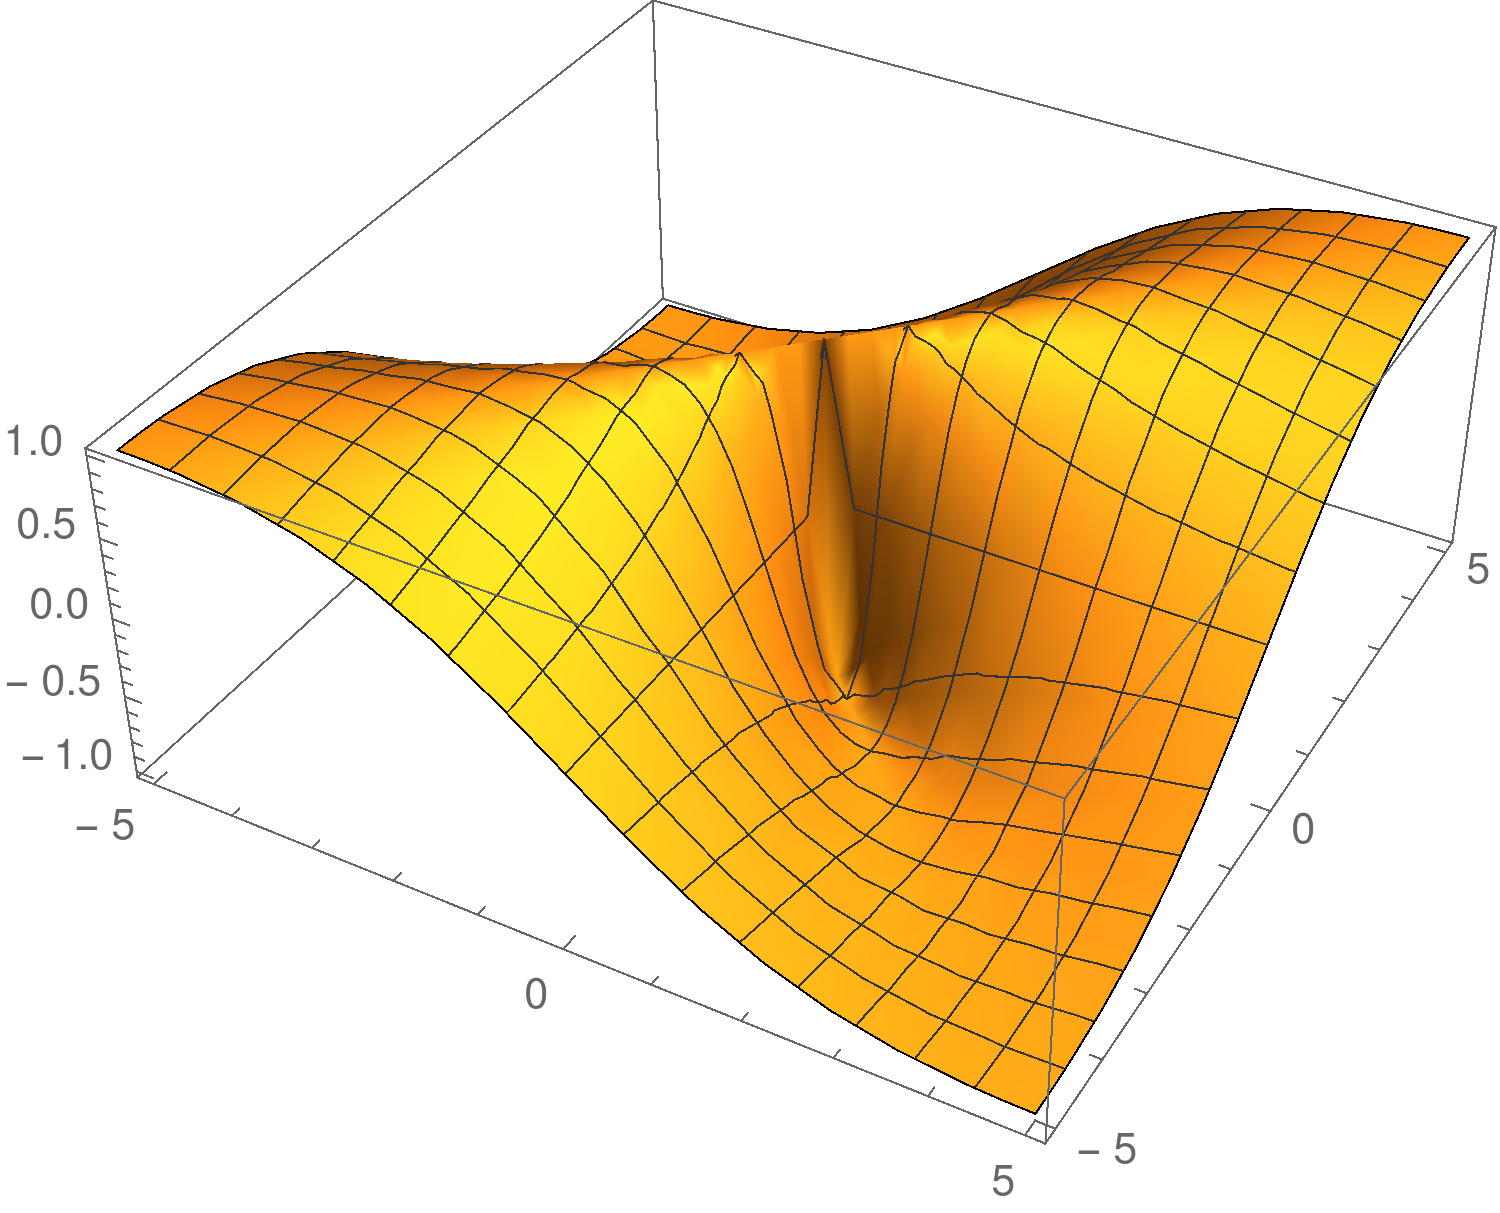 Esimerkki 8 1/2 4 2 0-2 - 4-4 - 2 0 2 4 Tutkitaan funktion f (x, y) raja-arvoa pisteen (0, 0)